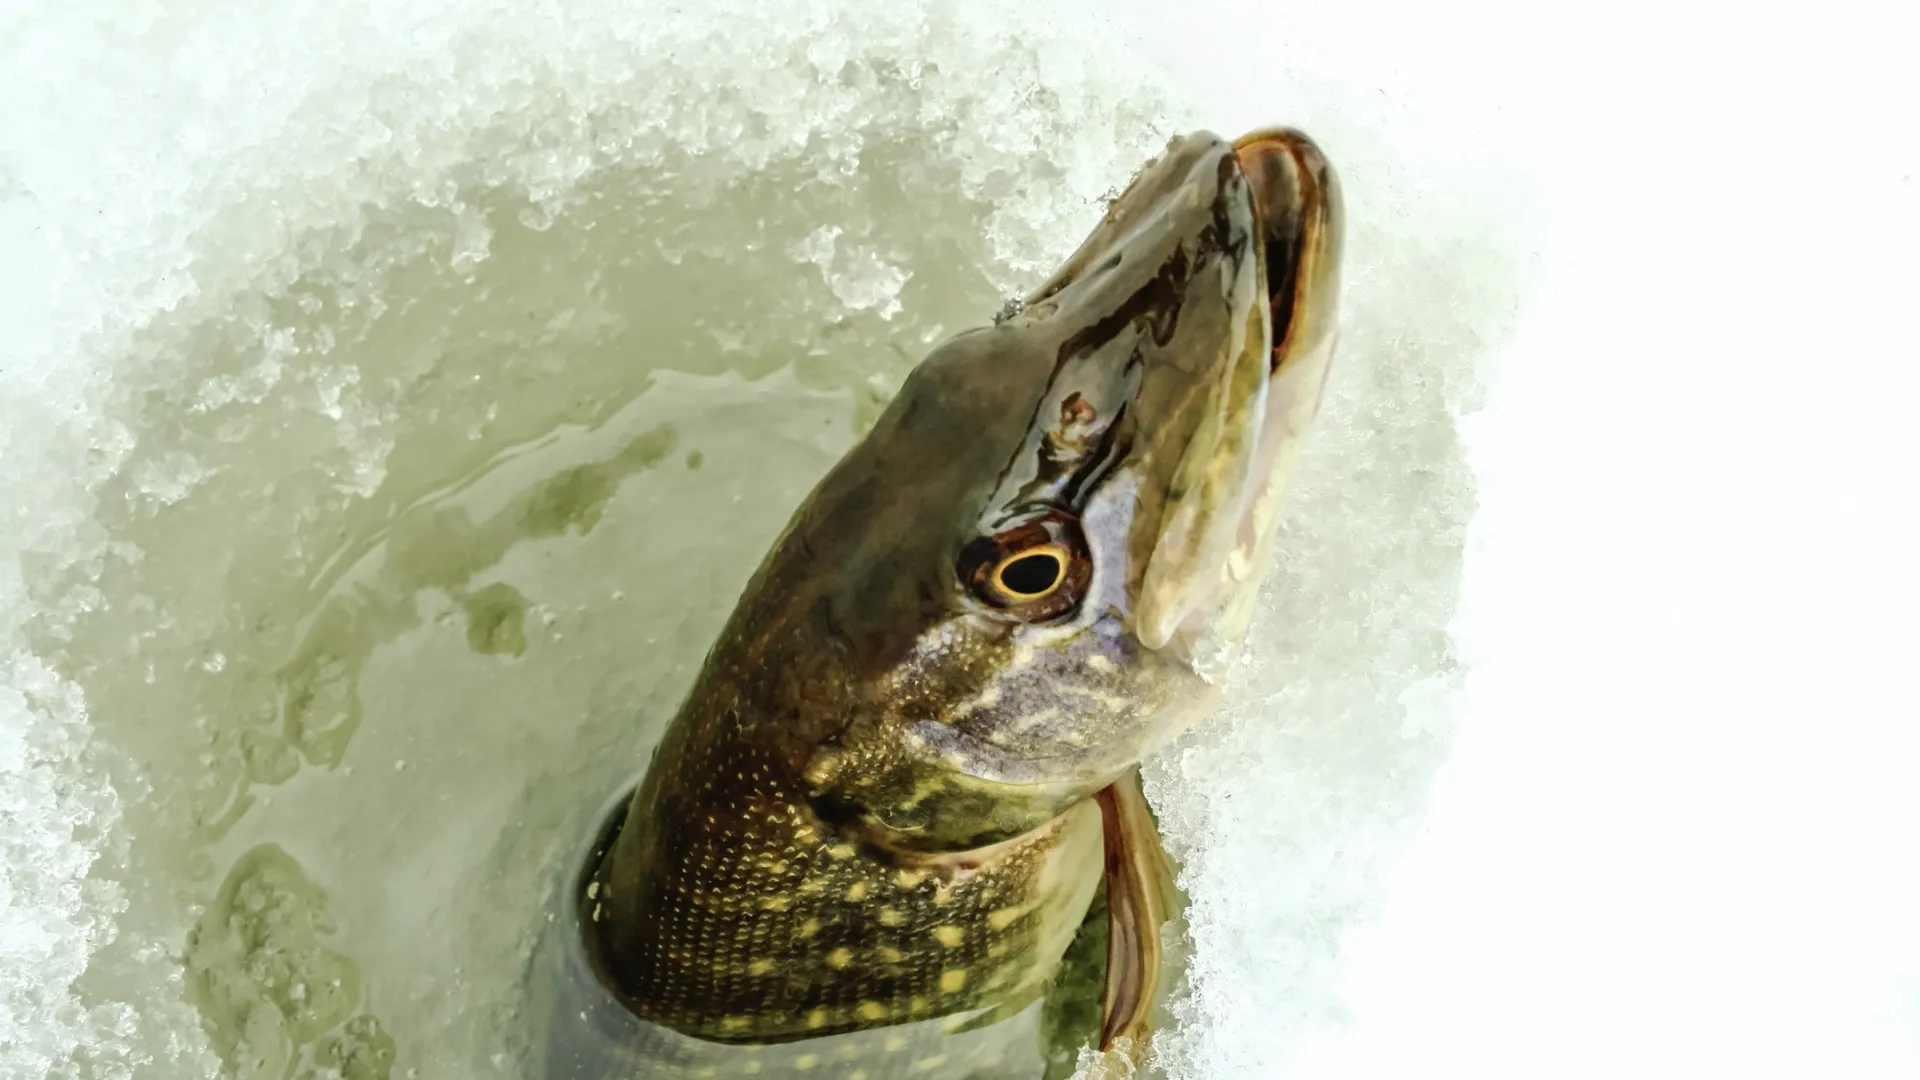 Рыбаки рассказывают о закрытии зимнего сезона в соцсетях. Фото: Dimon044/Shutterstock/Fotodom